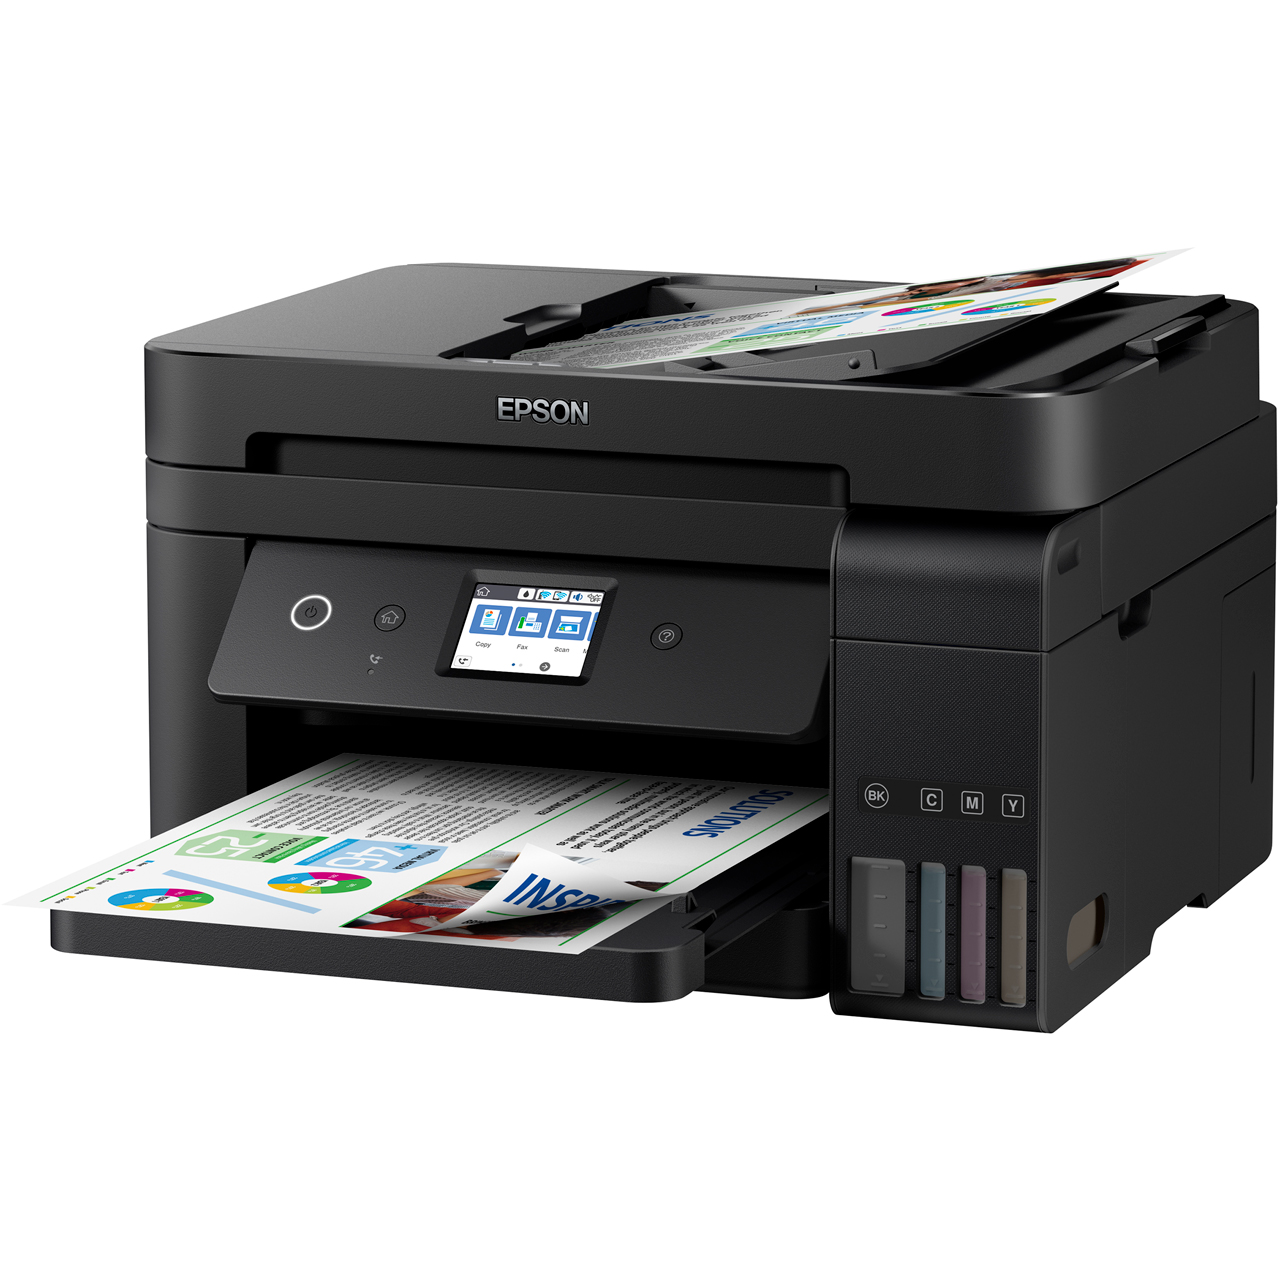 Epson EcoTank ET-4750 Inkjet Printer Review